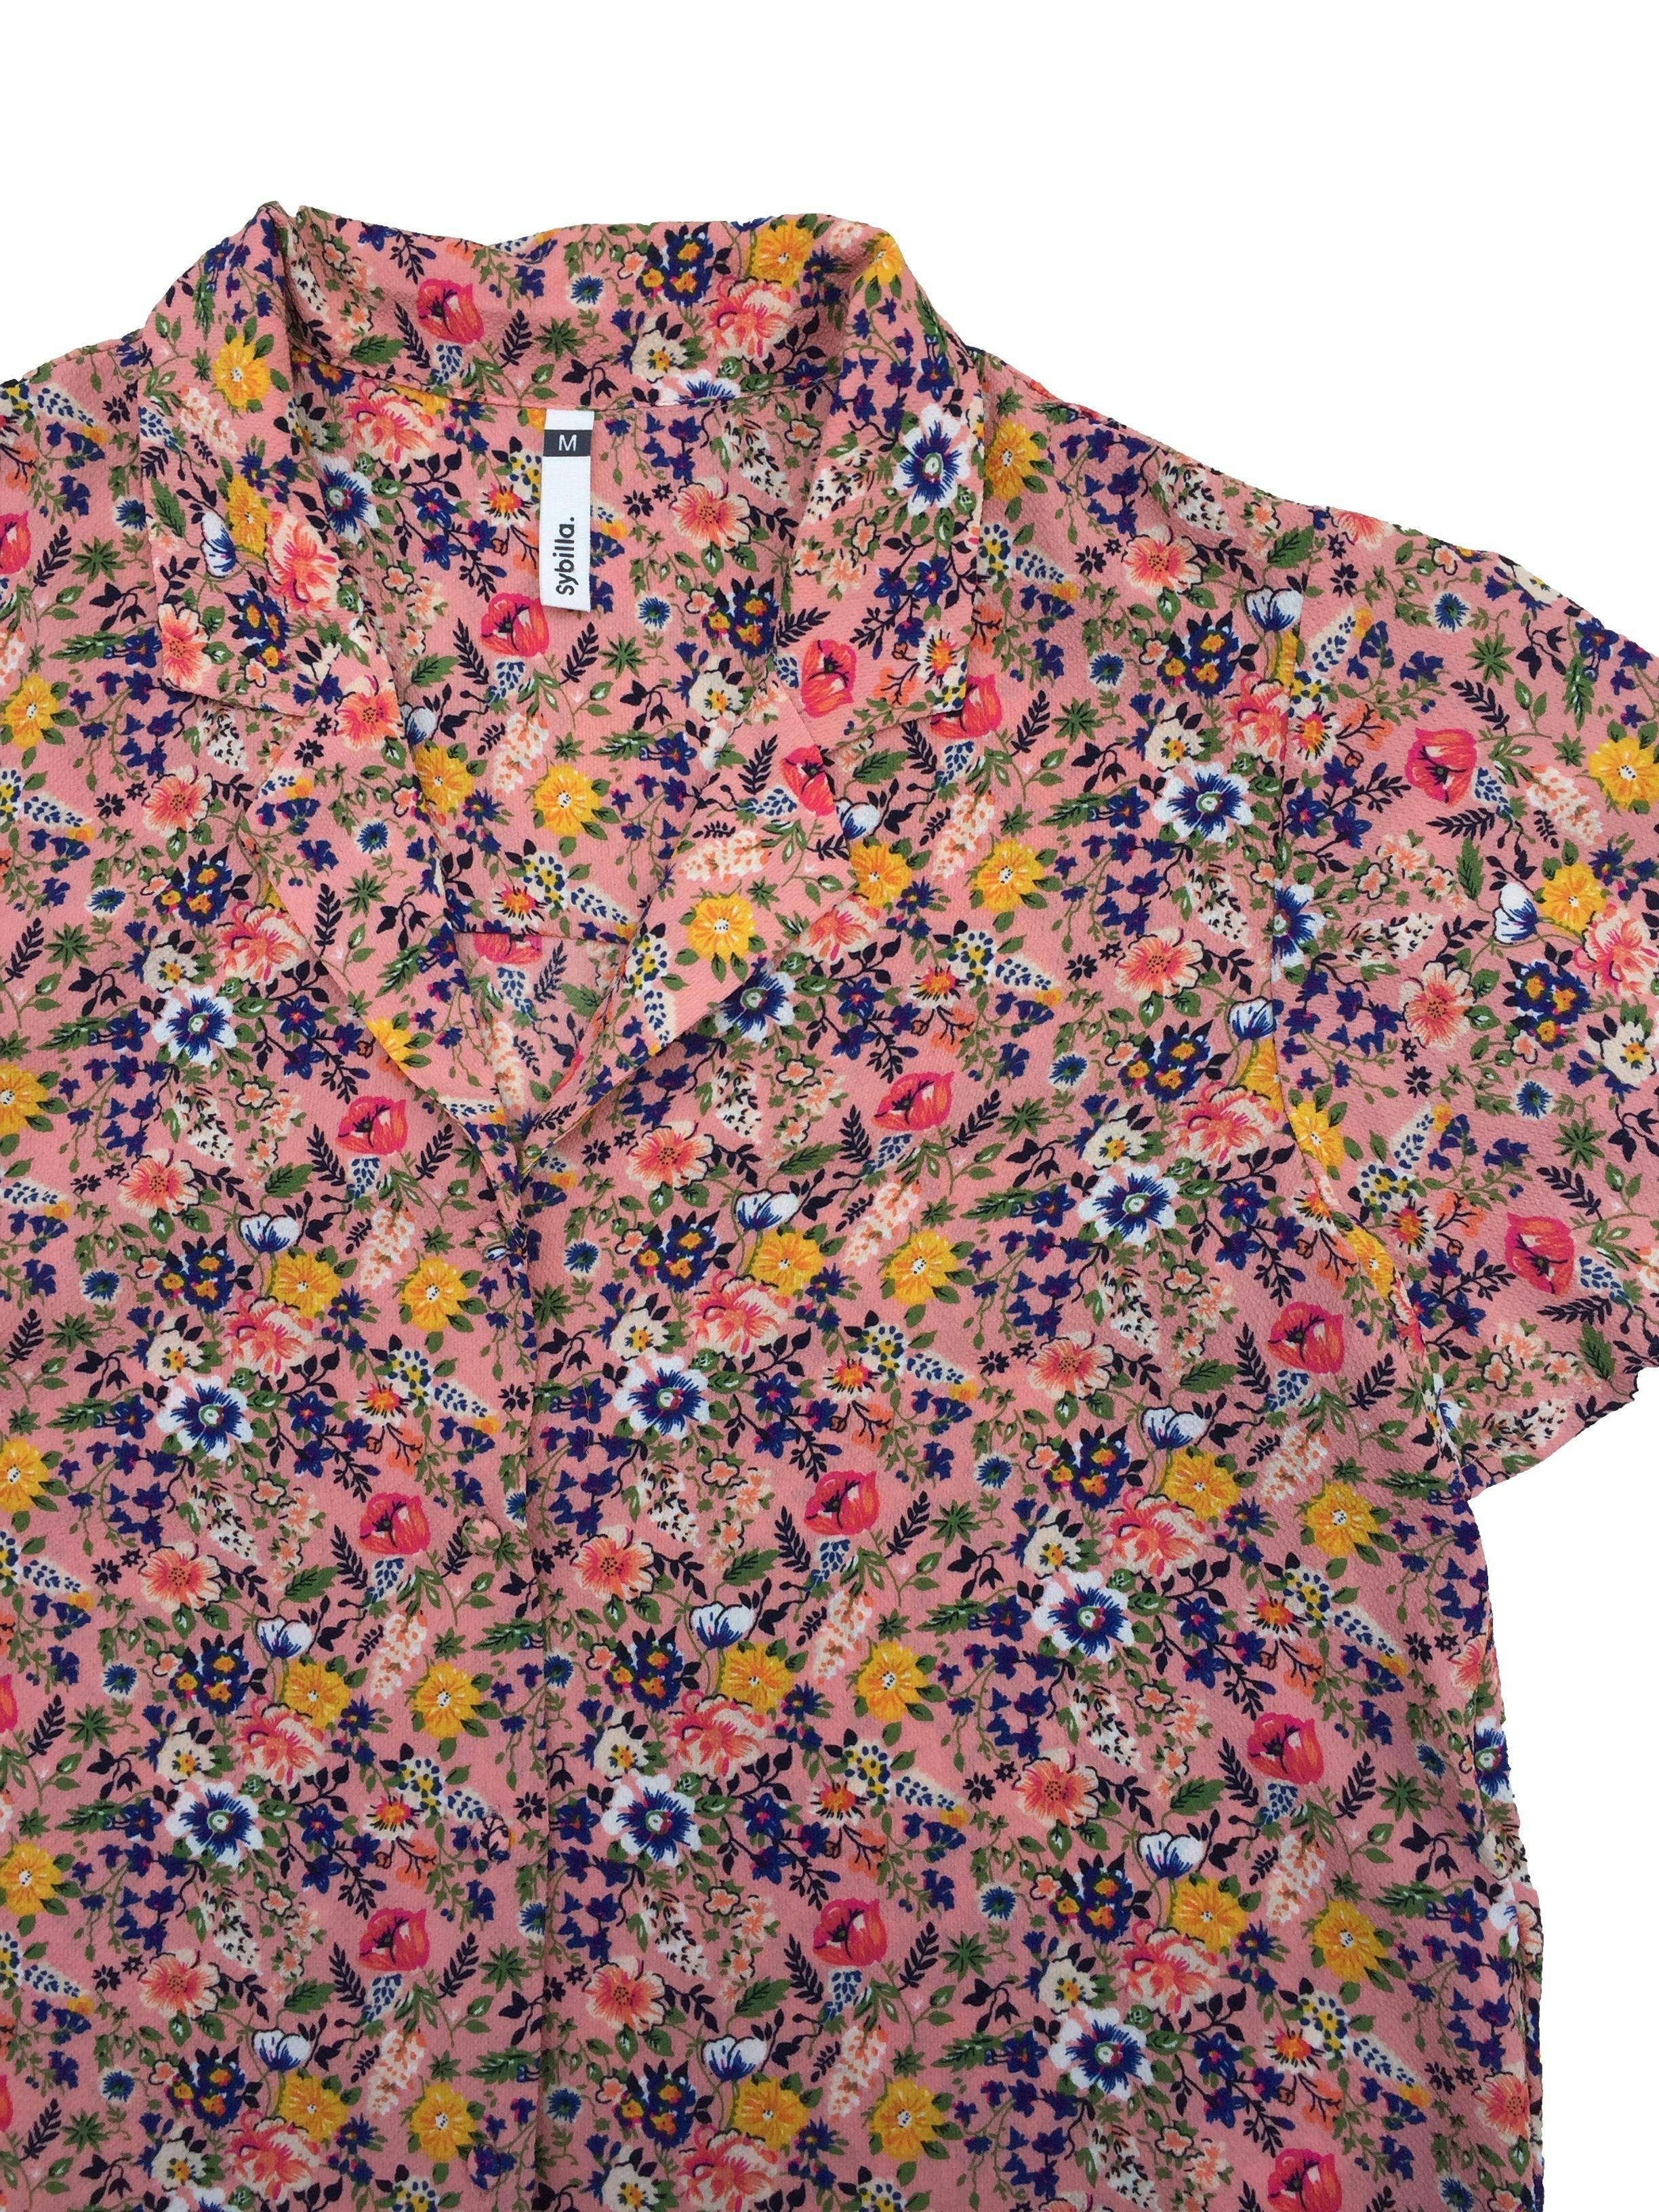 Blusa Sybilla de crepé palo rosa con flores, botones delanteros. Busto 98cm Largo 50cm